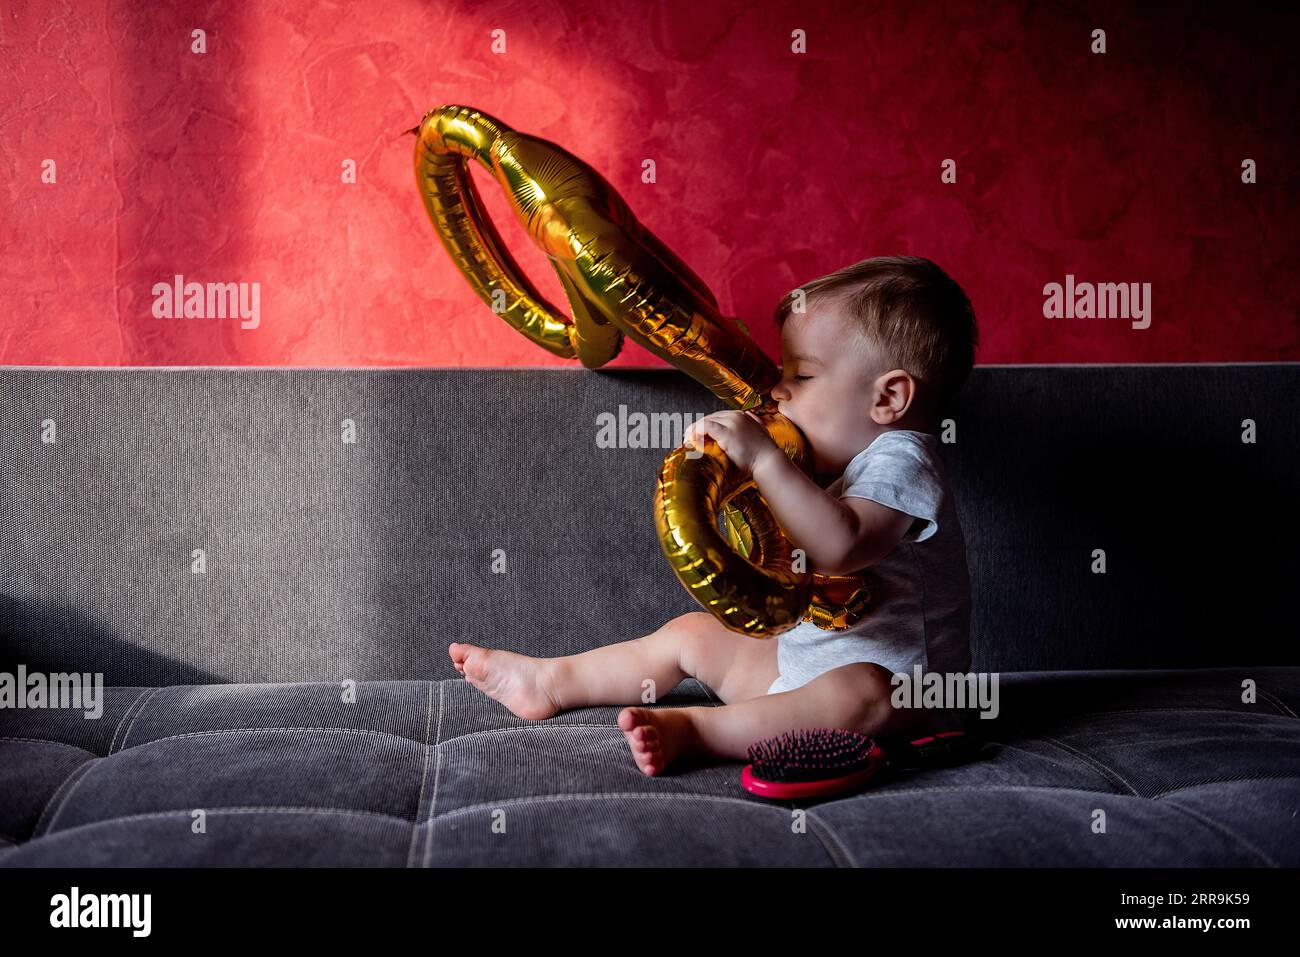 Première fête d'anniversaire, bébé joue avec des ballons d'aluminium de couleur or UN. Petit garçon se trompant, assis sur un canapé gris au soleil. Dessin ombre claire activé Banque D'Images